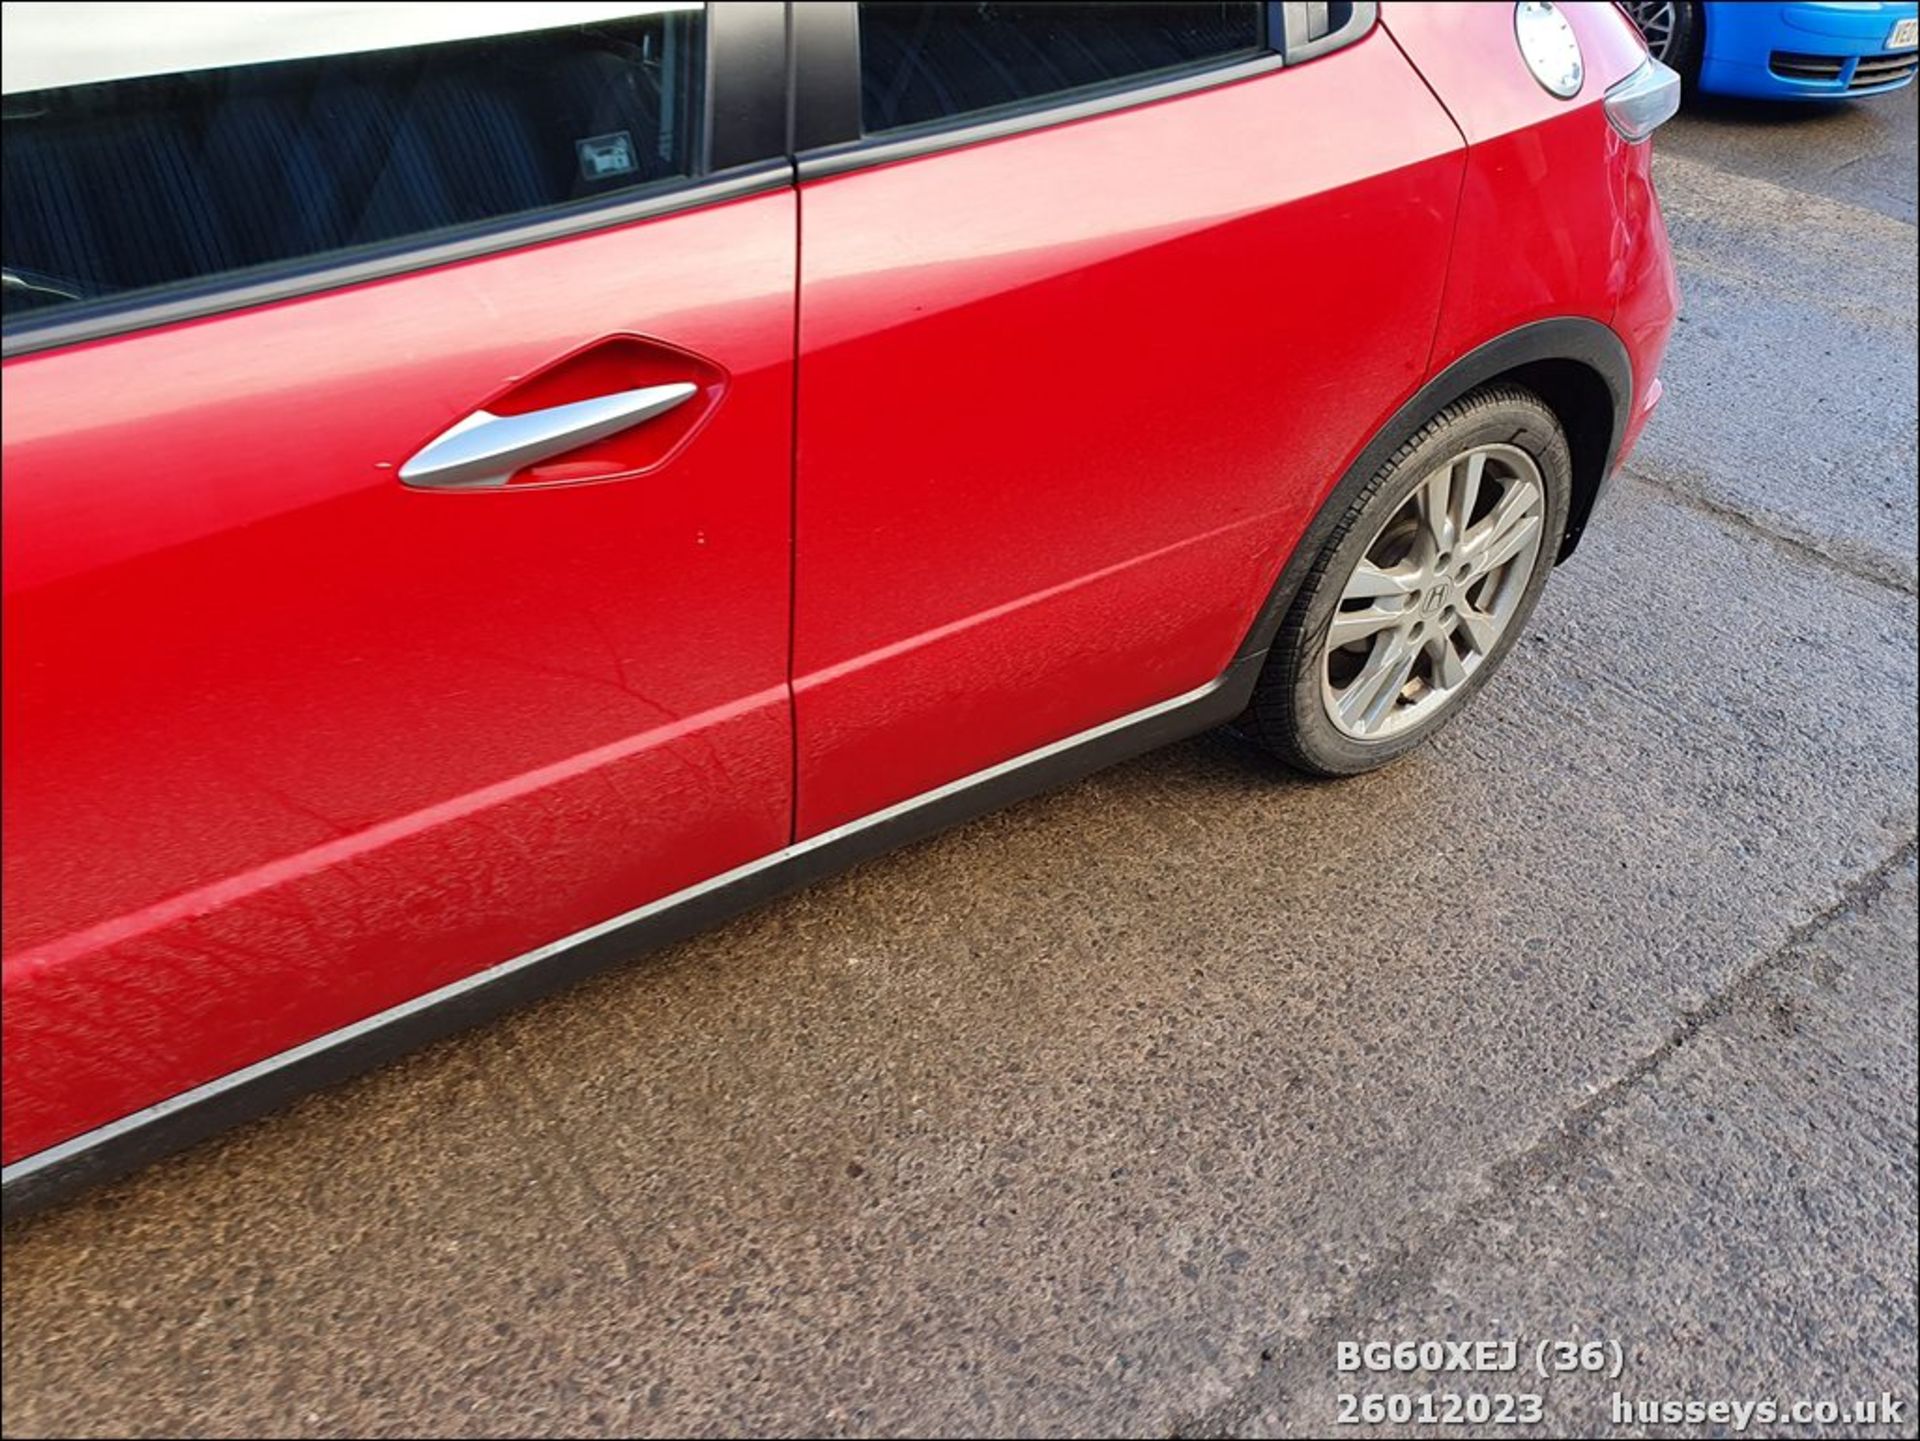 10/60 HONDA CIVIC ES I-CTDI - 2204cc 5dr Hatchback (Red, 144k) - Image 36 of 45